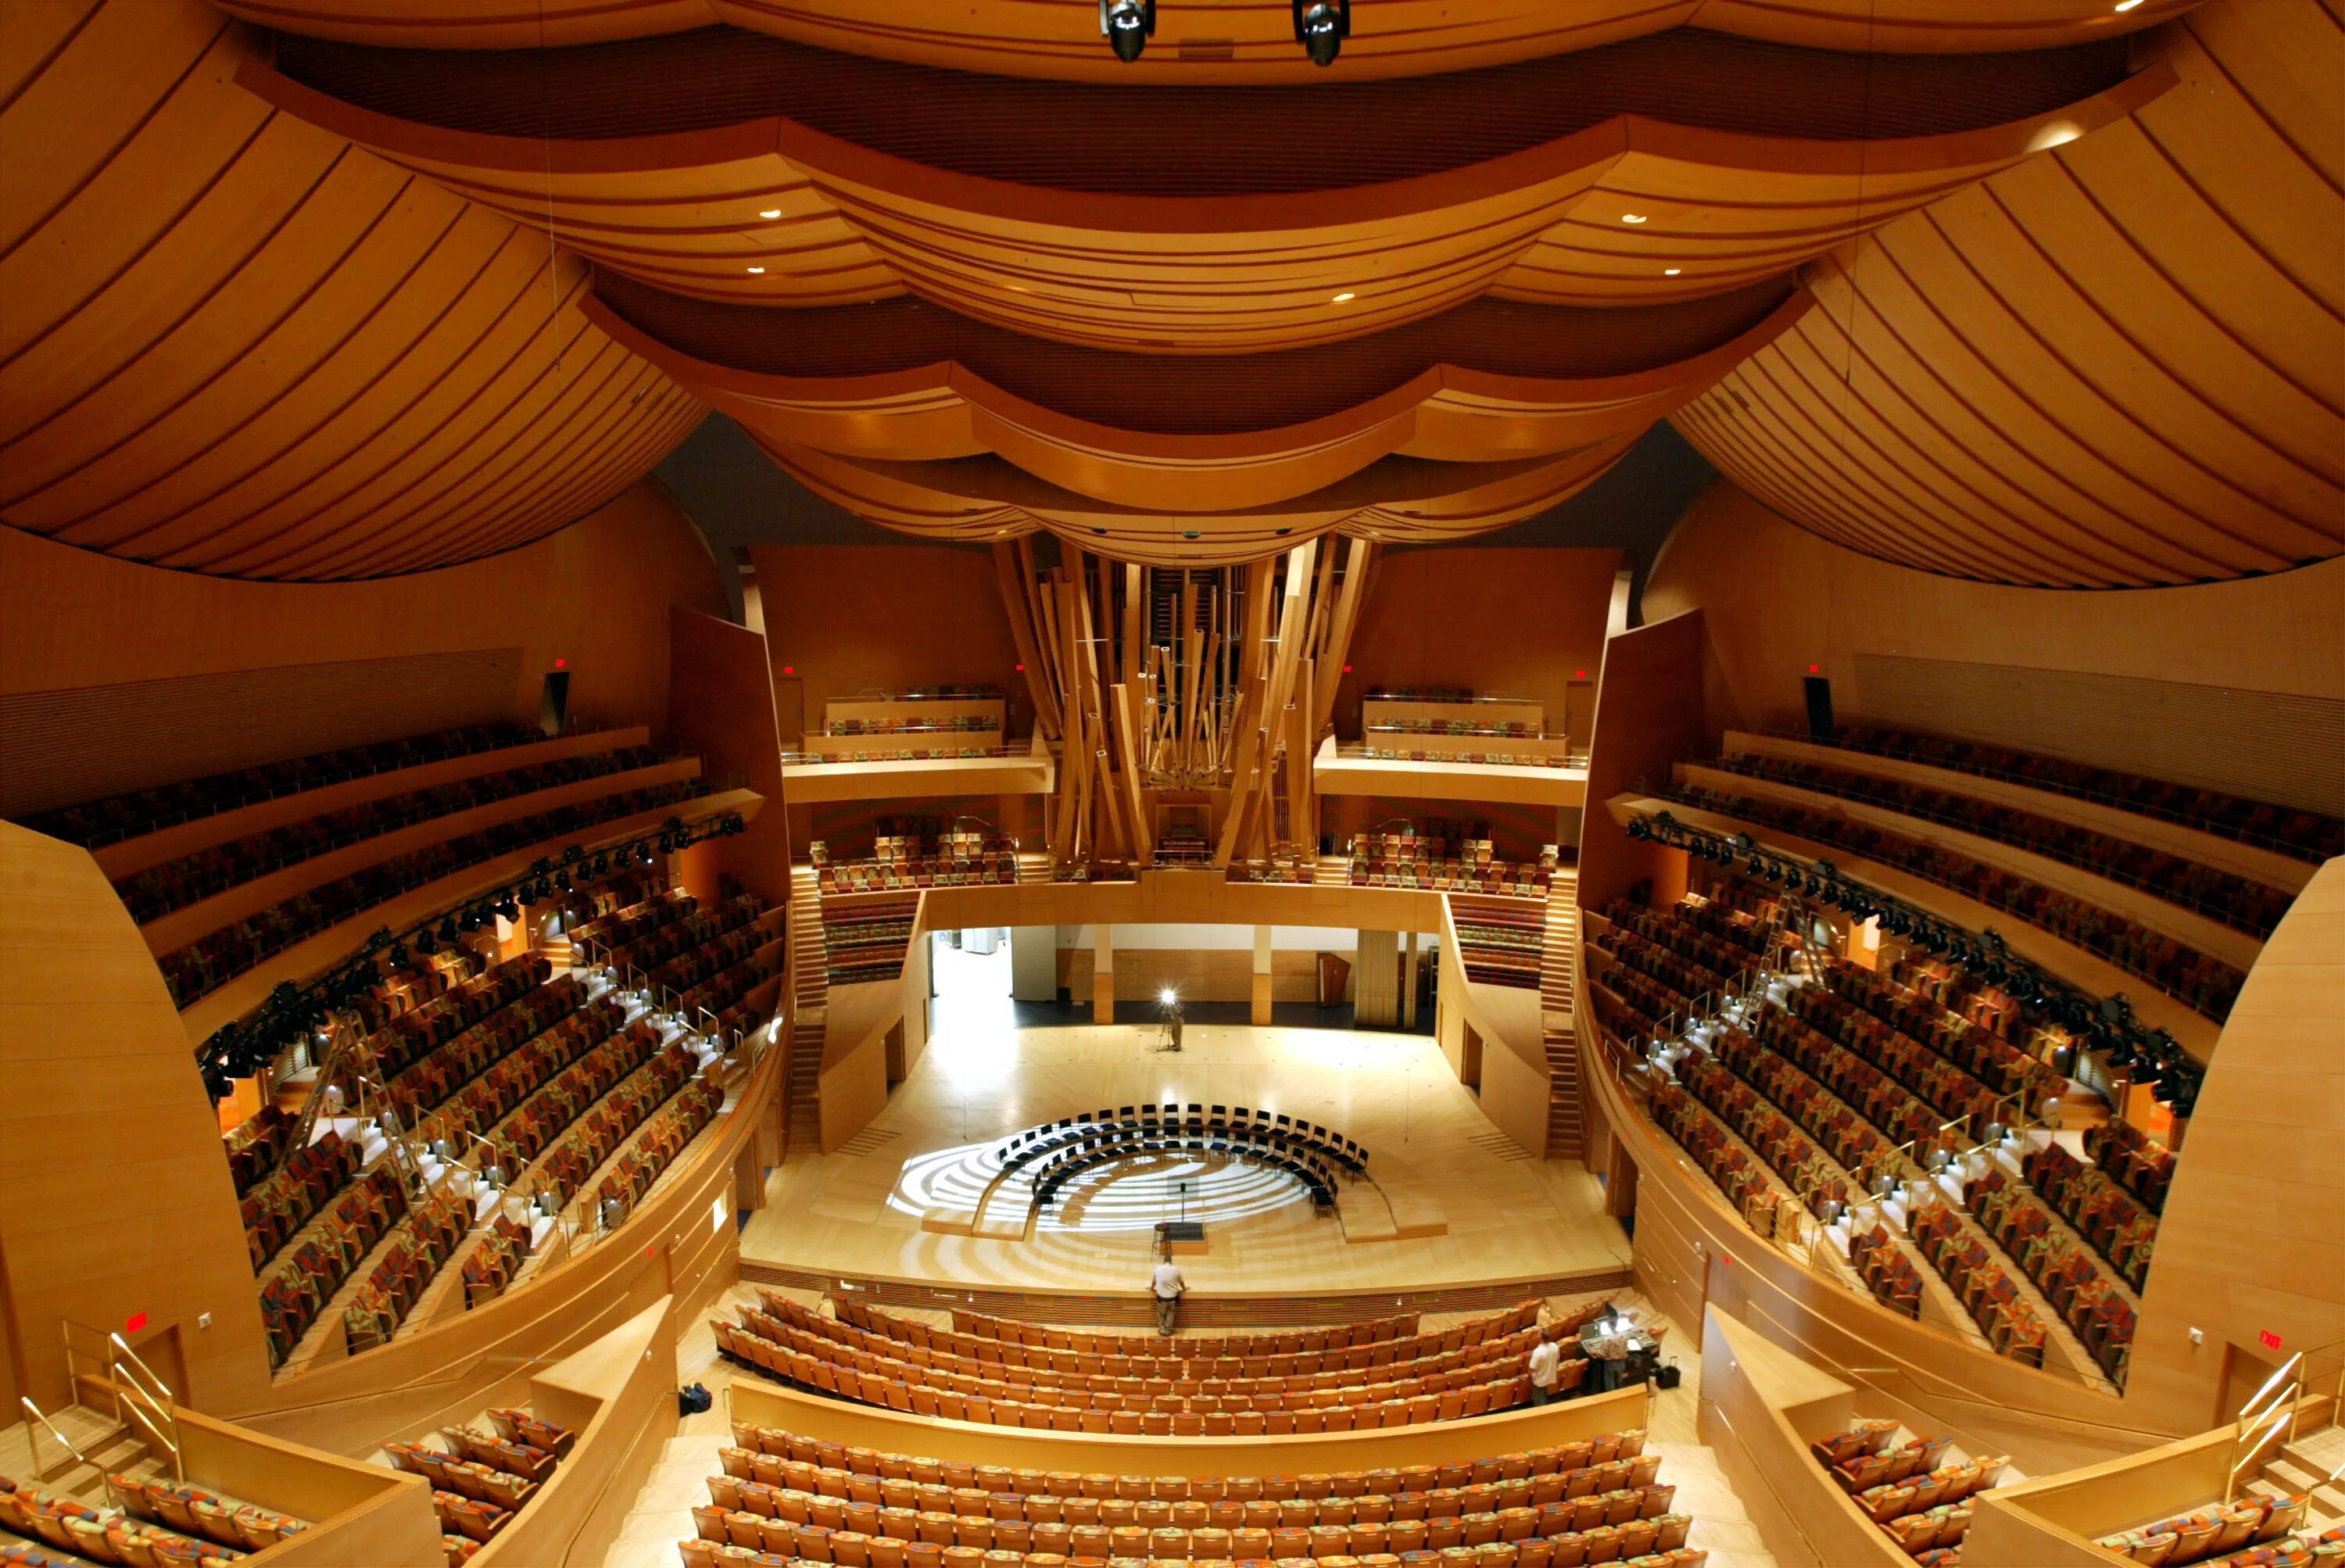 Концертный зал дисней. Концертный зал Уолта Диснея в Лос-Анджелесе, США. Walt Disney концертный зал (Лос Анджелес). Фрэнк Гери концертный зал Уолта Диснея. Зал Уолта Диснея (Лос-Анджелес, США, 2003 Г.).